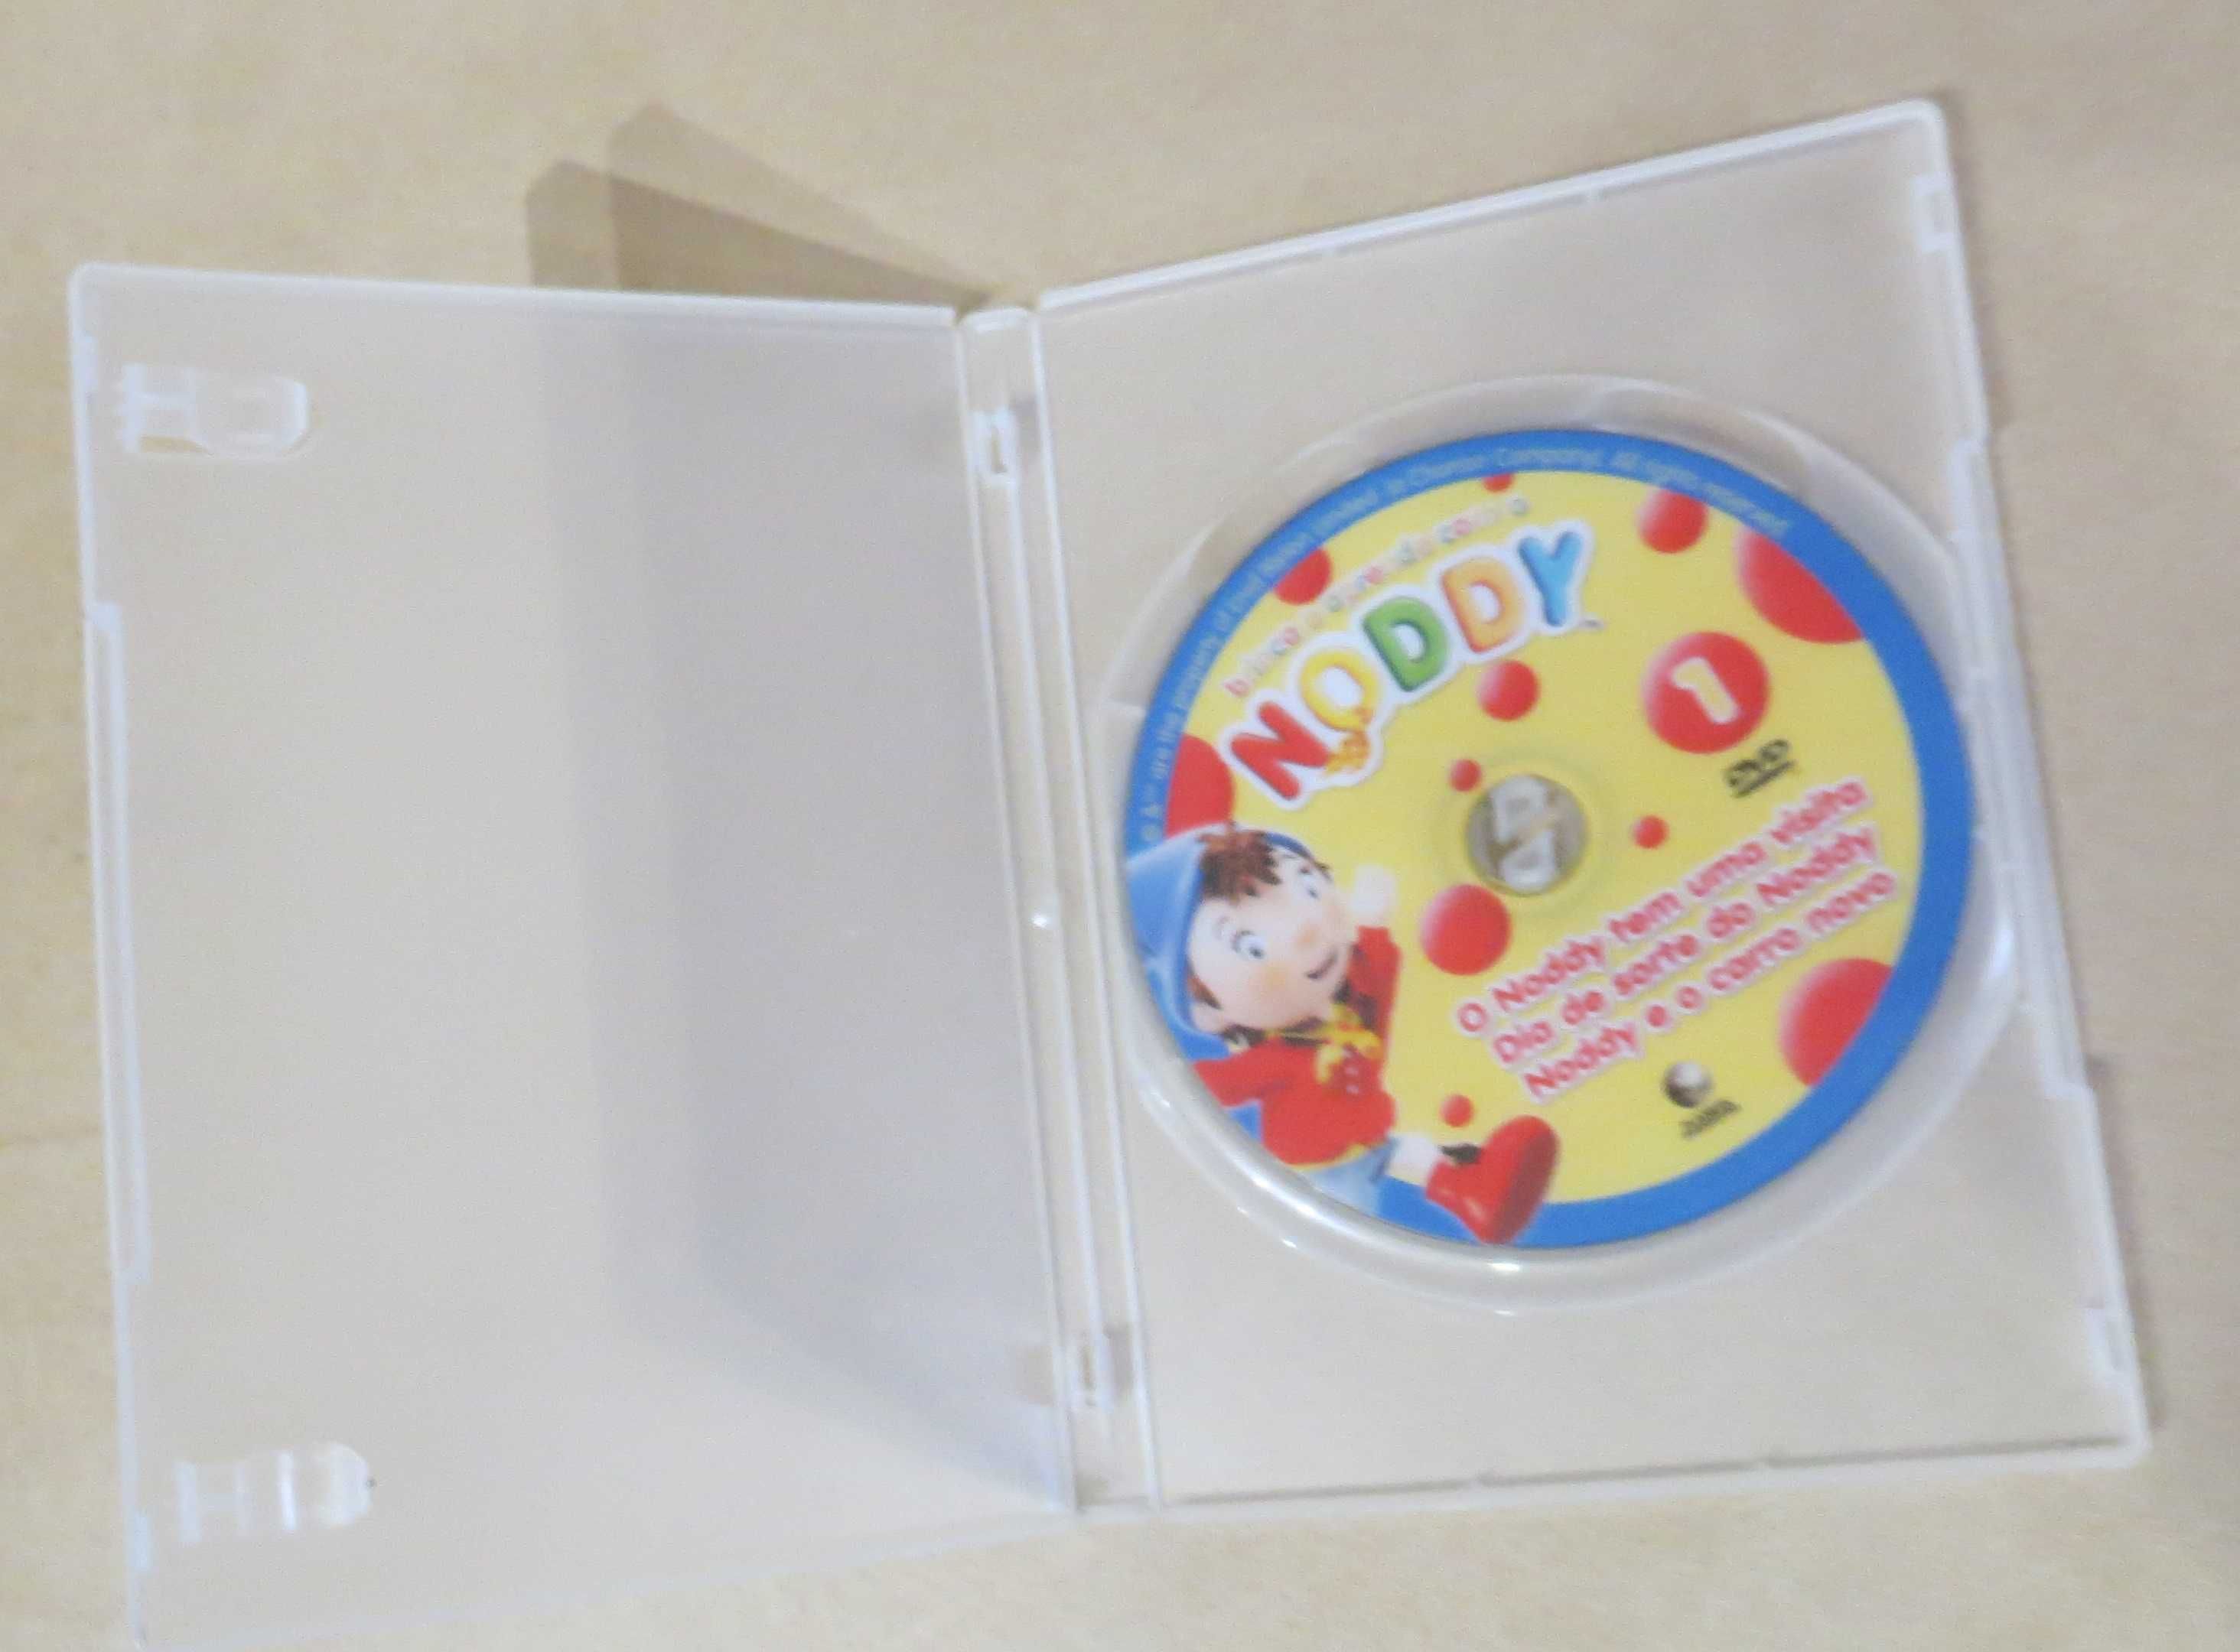 DVD Brinca e Aprende com o Noddy - com 3 filmes